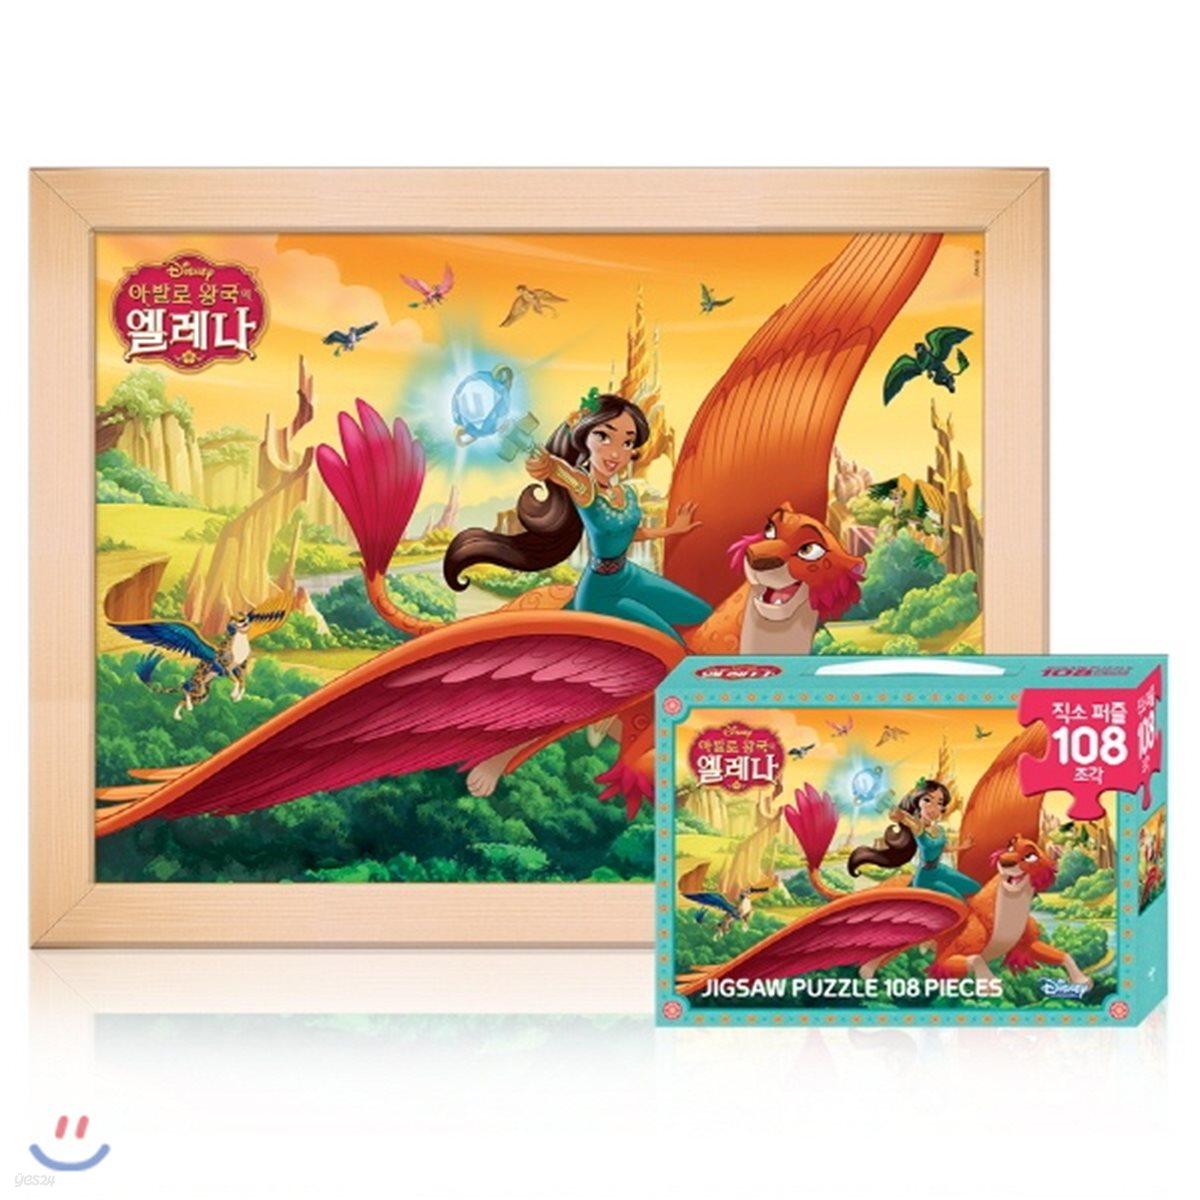 디즈니 프린세스 퍼즐북 : 아발로 왕국의 엘레나 직소퍼즐 (108P)+ 우드액자